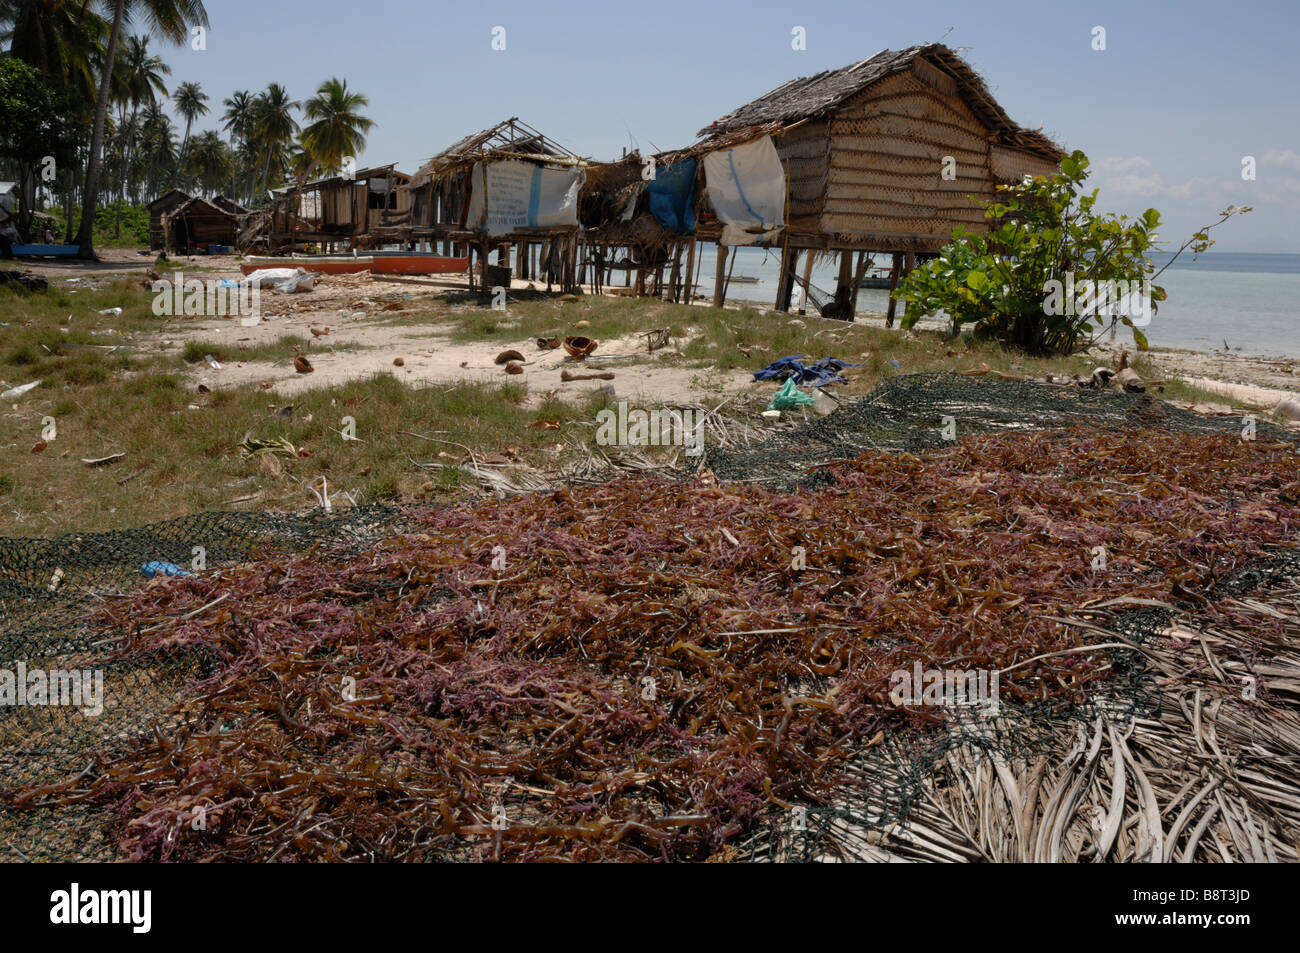 Secado de algas rojas en el sol en la isla de Pulau Maiga Semporna Sabah Malasia Borneo del sudeste de Asia Foto de stock